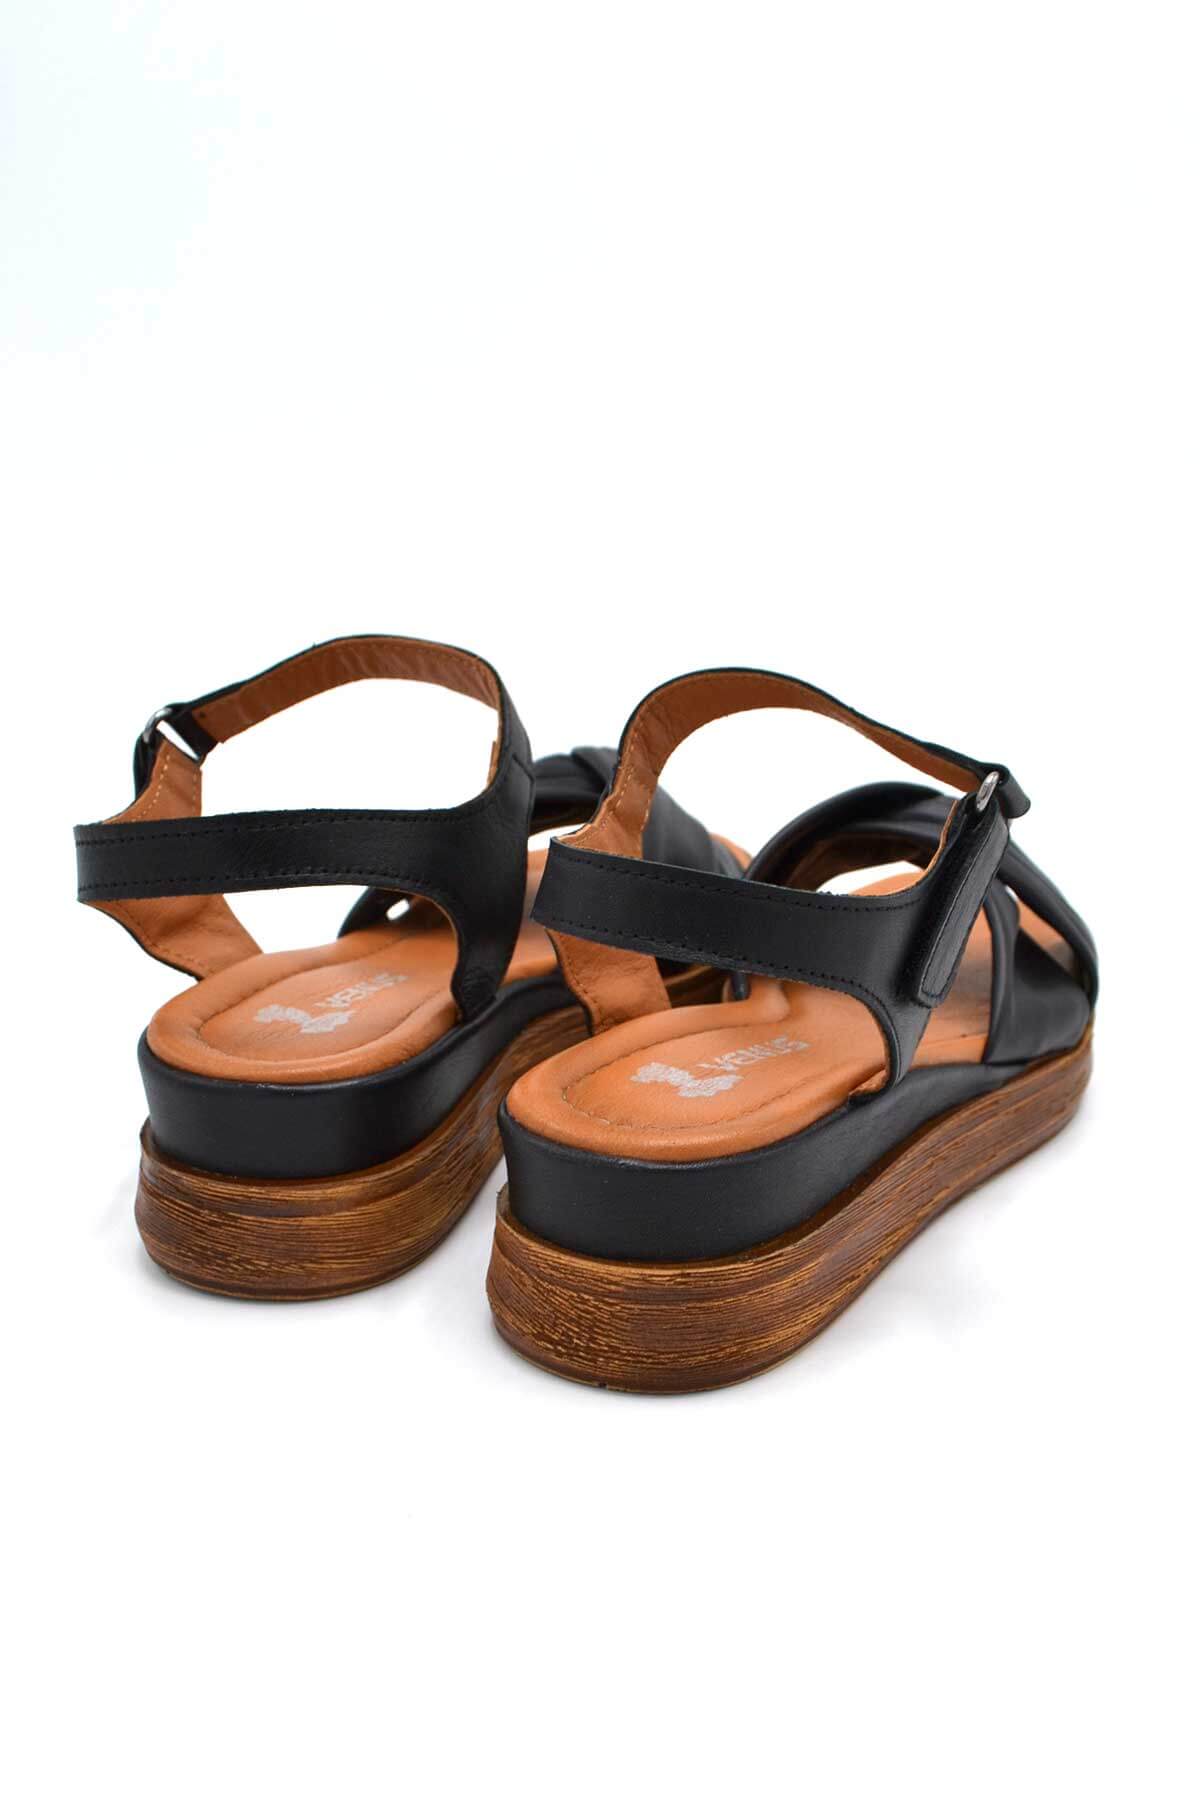 Kadın Comfort Deri Sandalet Siyah 2216403Y